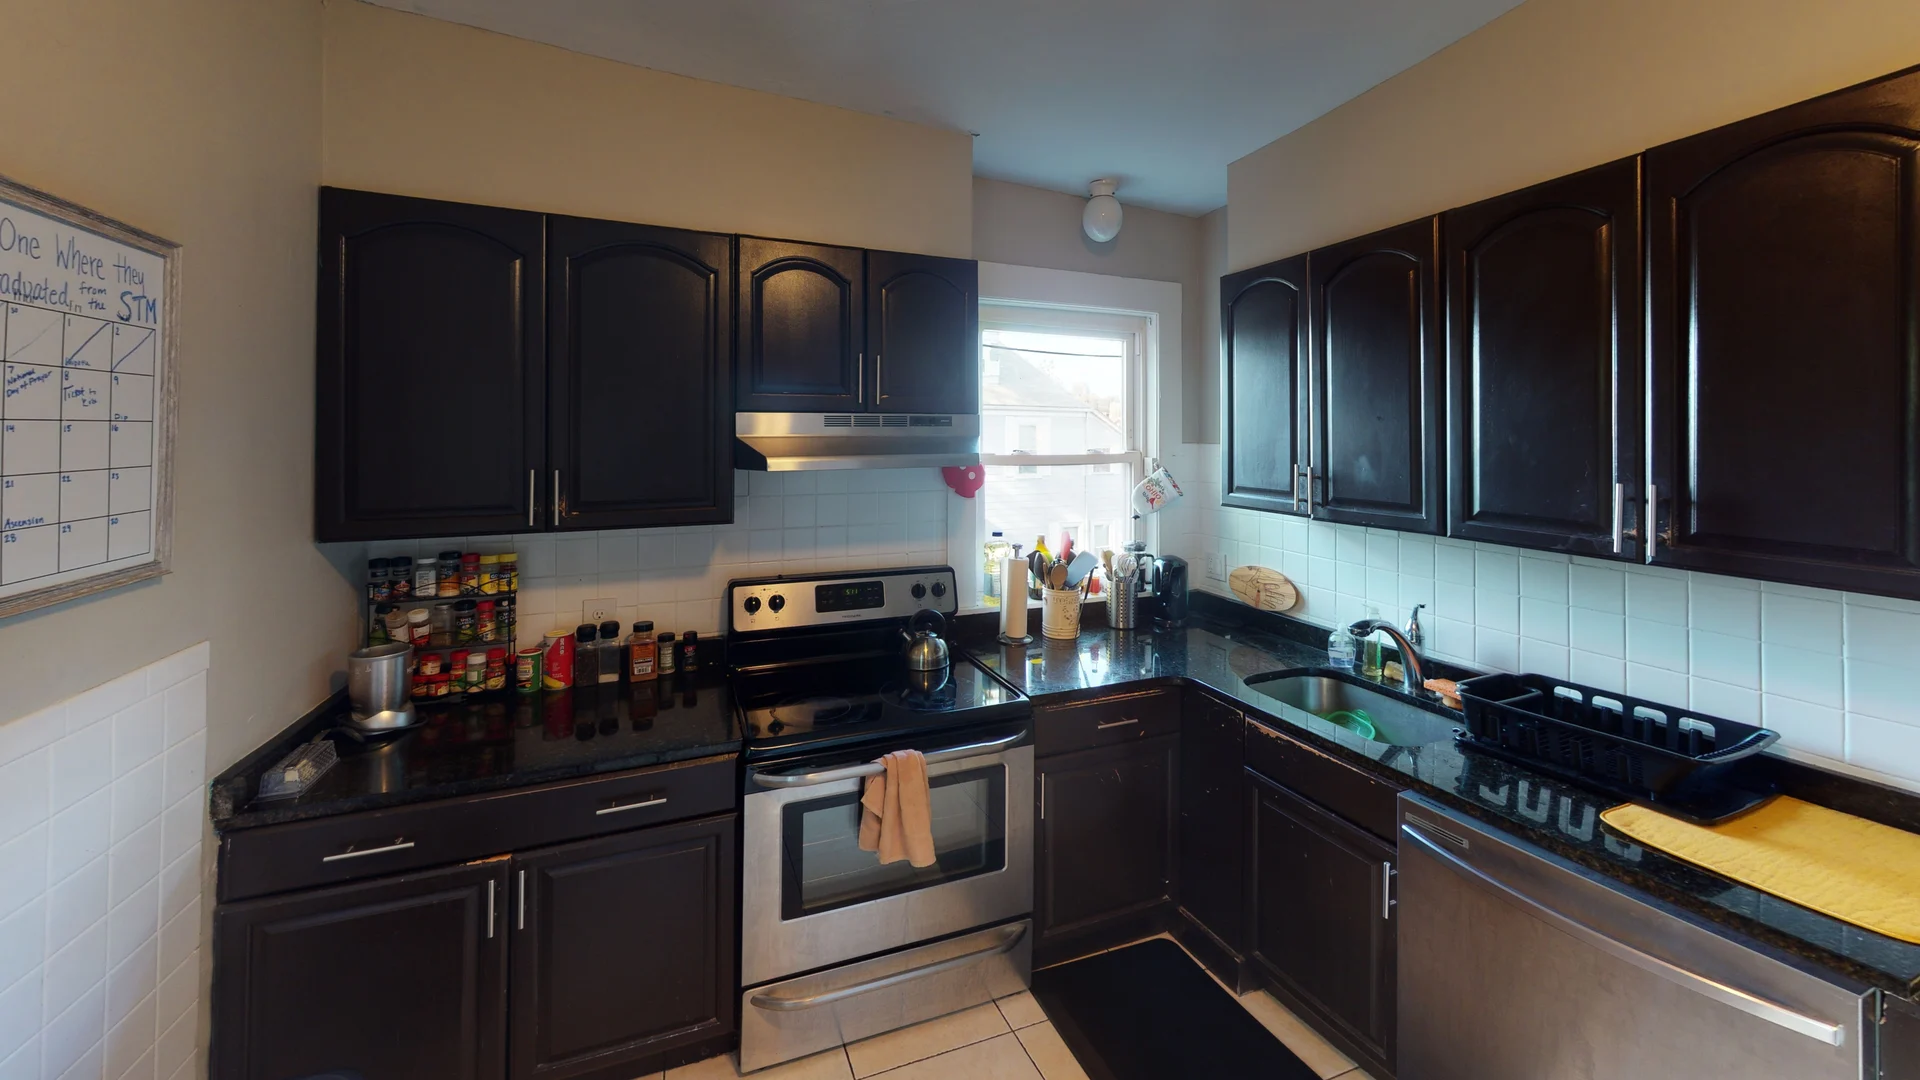 Photos of apartment on Mapleton St.,Boston MA 02135